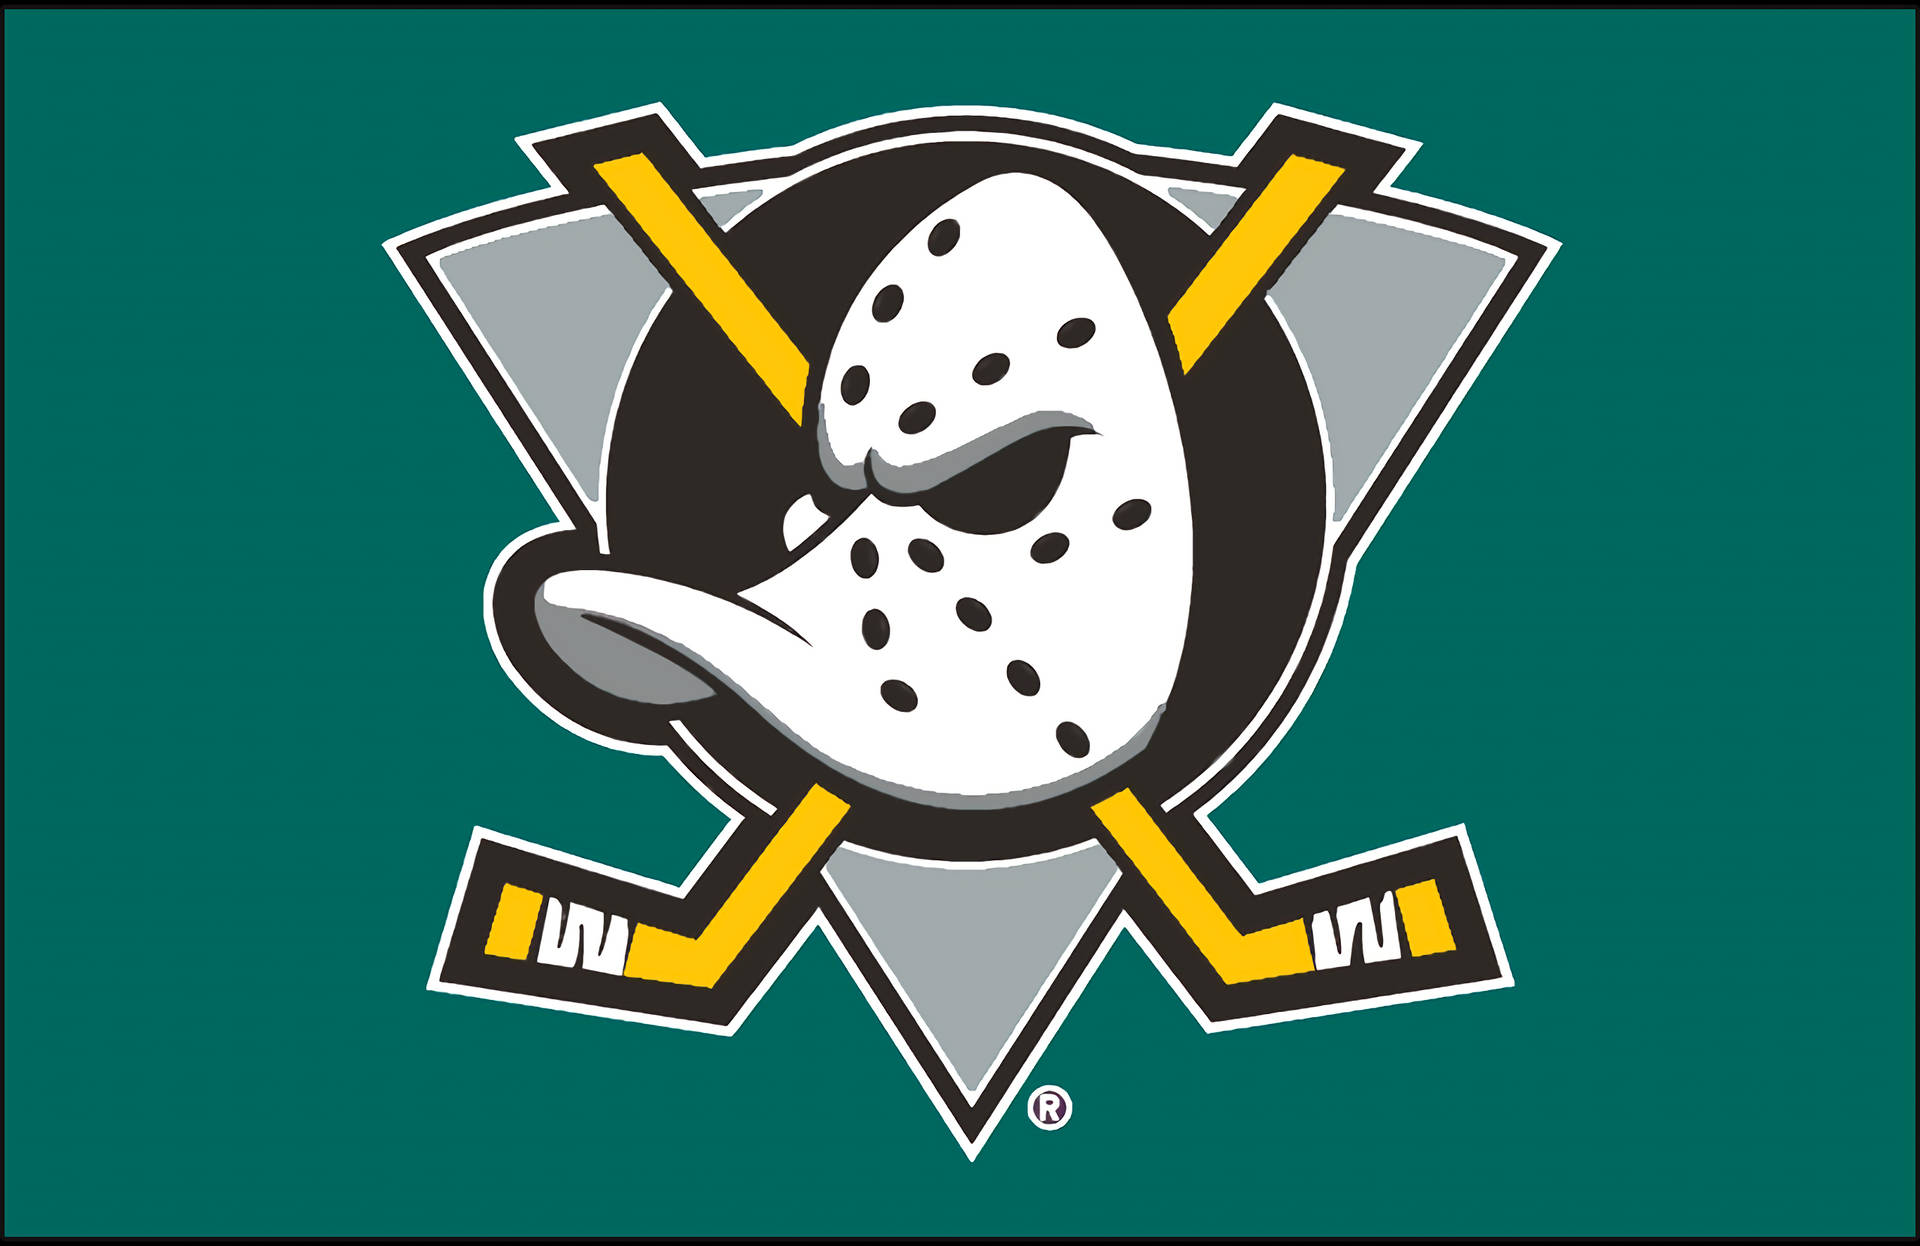 Anaheim Ducks Official Nhl Team Logo Background